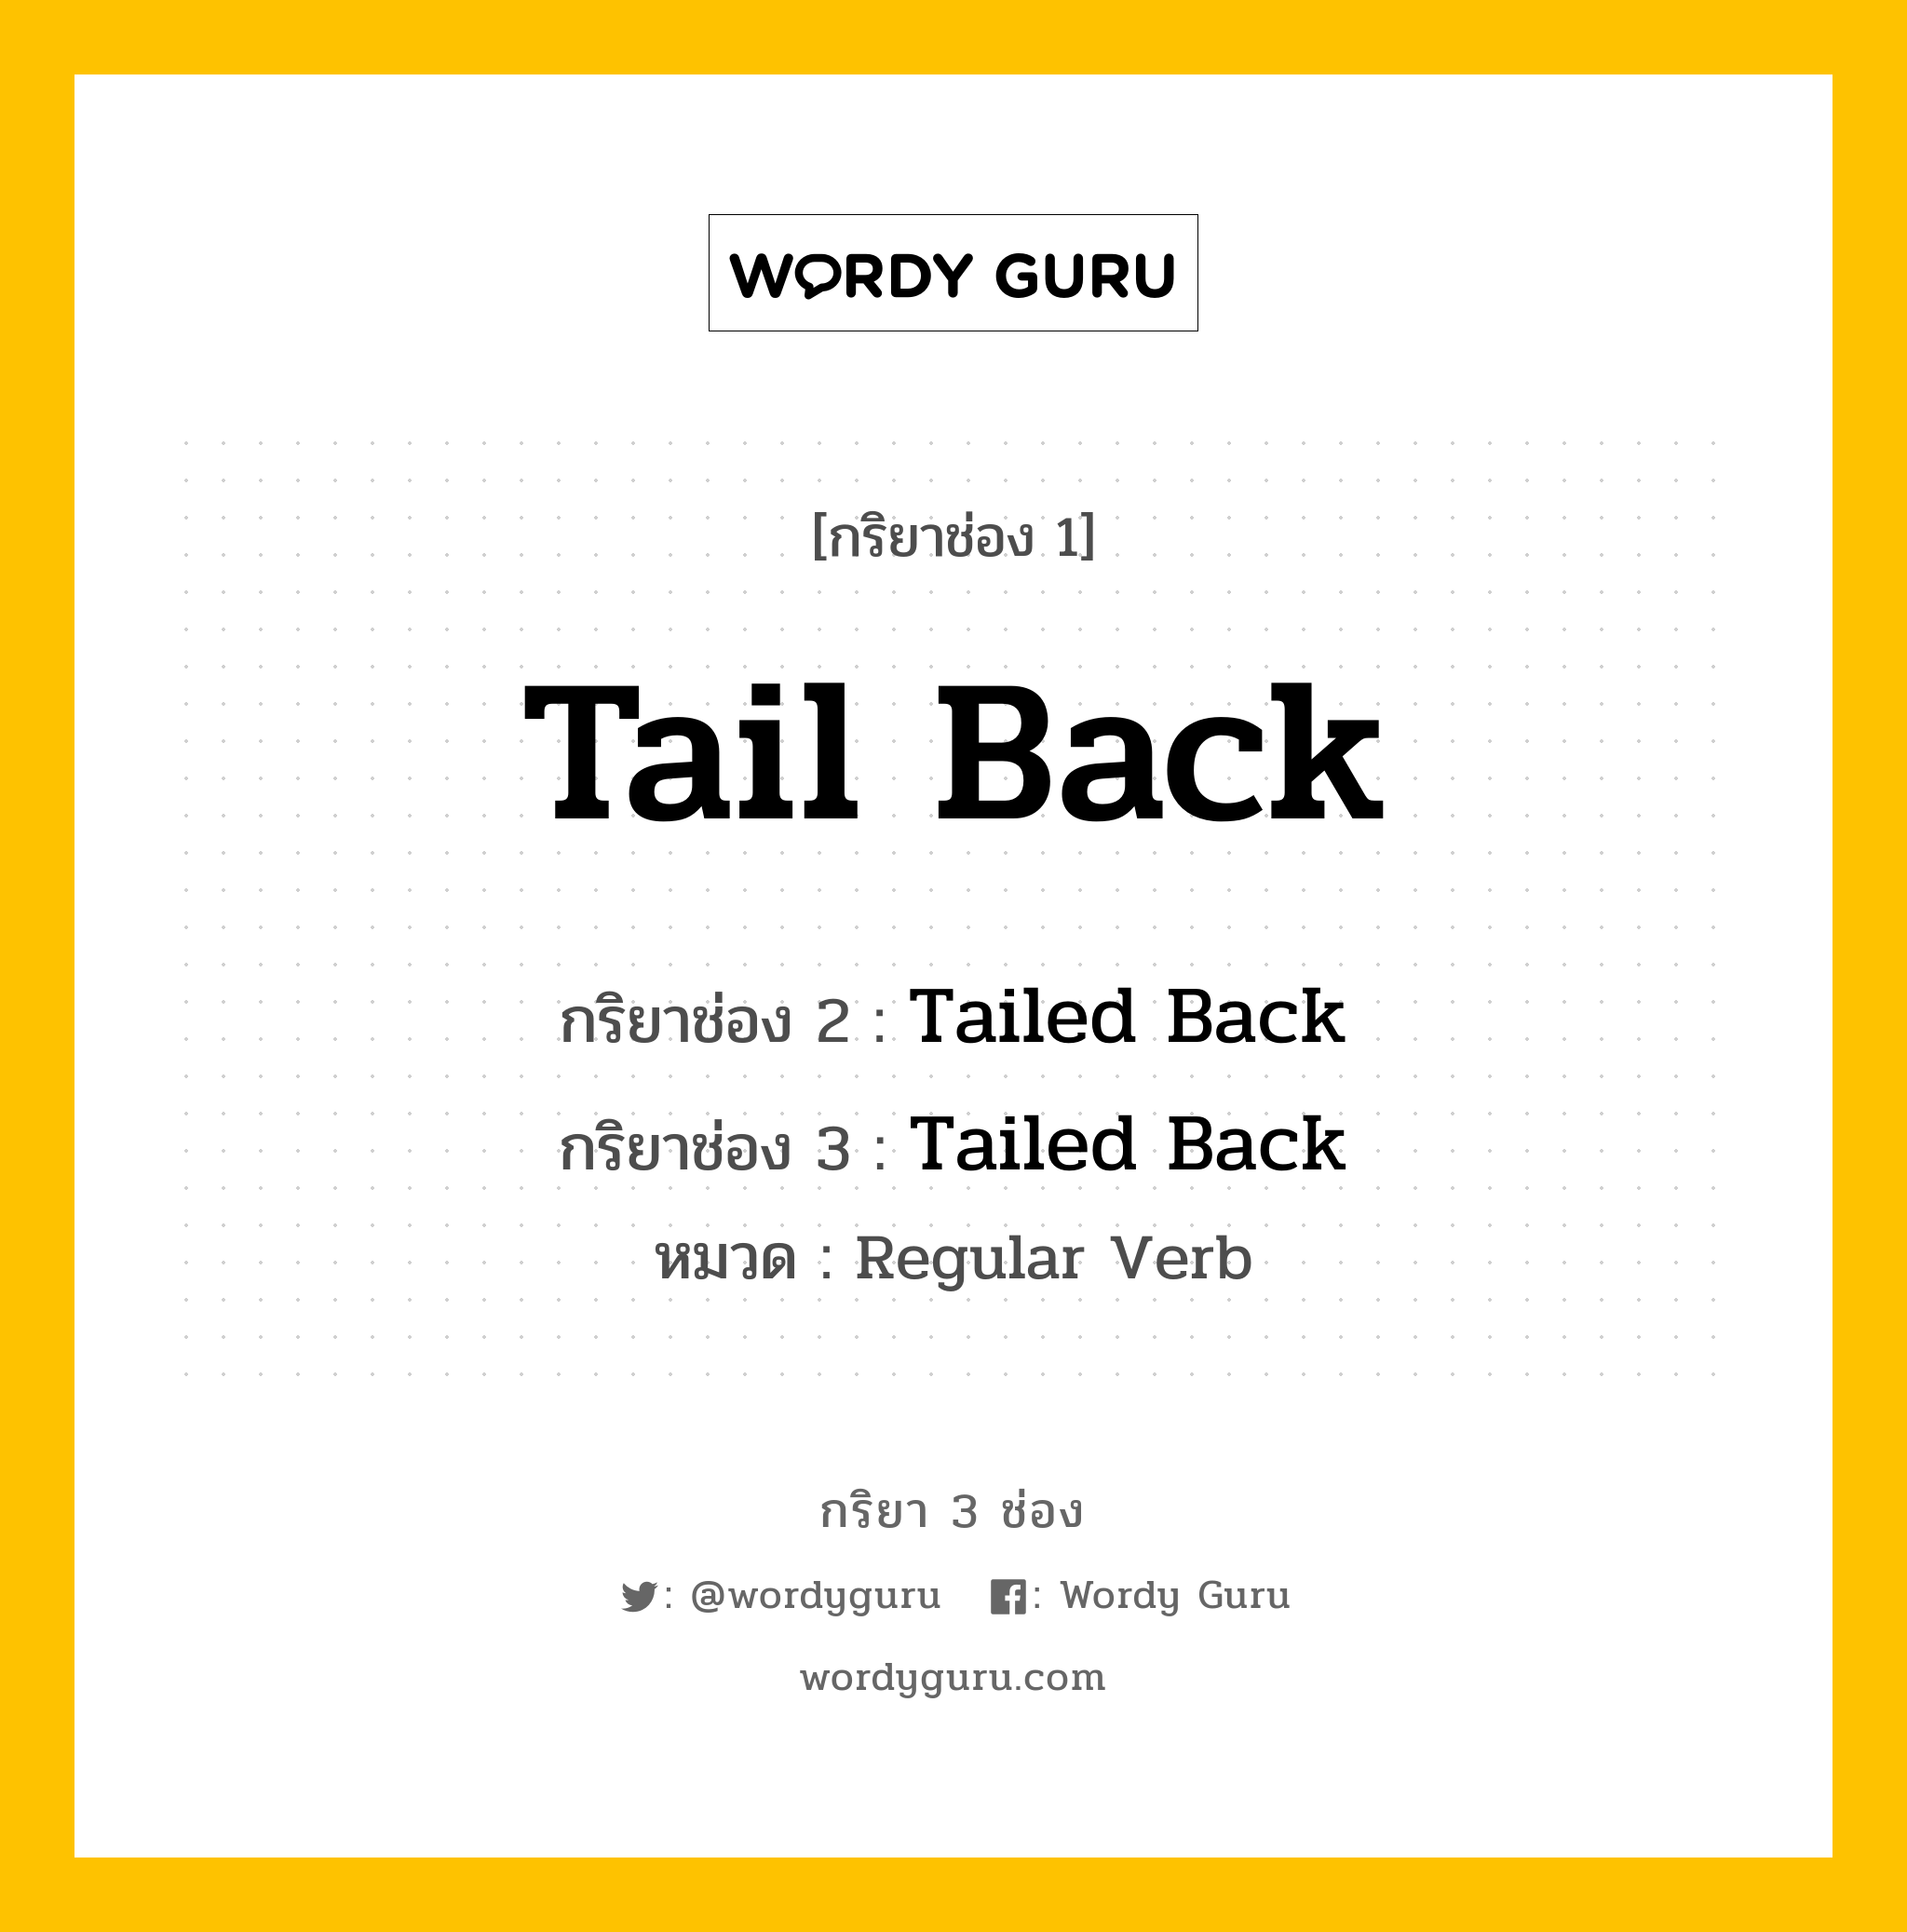 กริยา 3 ช่อง: Tail Back ช่อง 2 Tail Back ช่อง 3 คืออะไร, กริยาช่อง 1 Tail Back กริยาช่อง 2 Tailed Back กริยาช่อง 3 Tailed Back หมวด Regular Verb หมวด Regular Verb